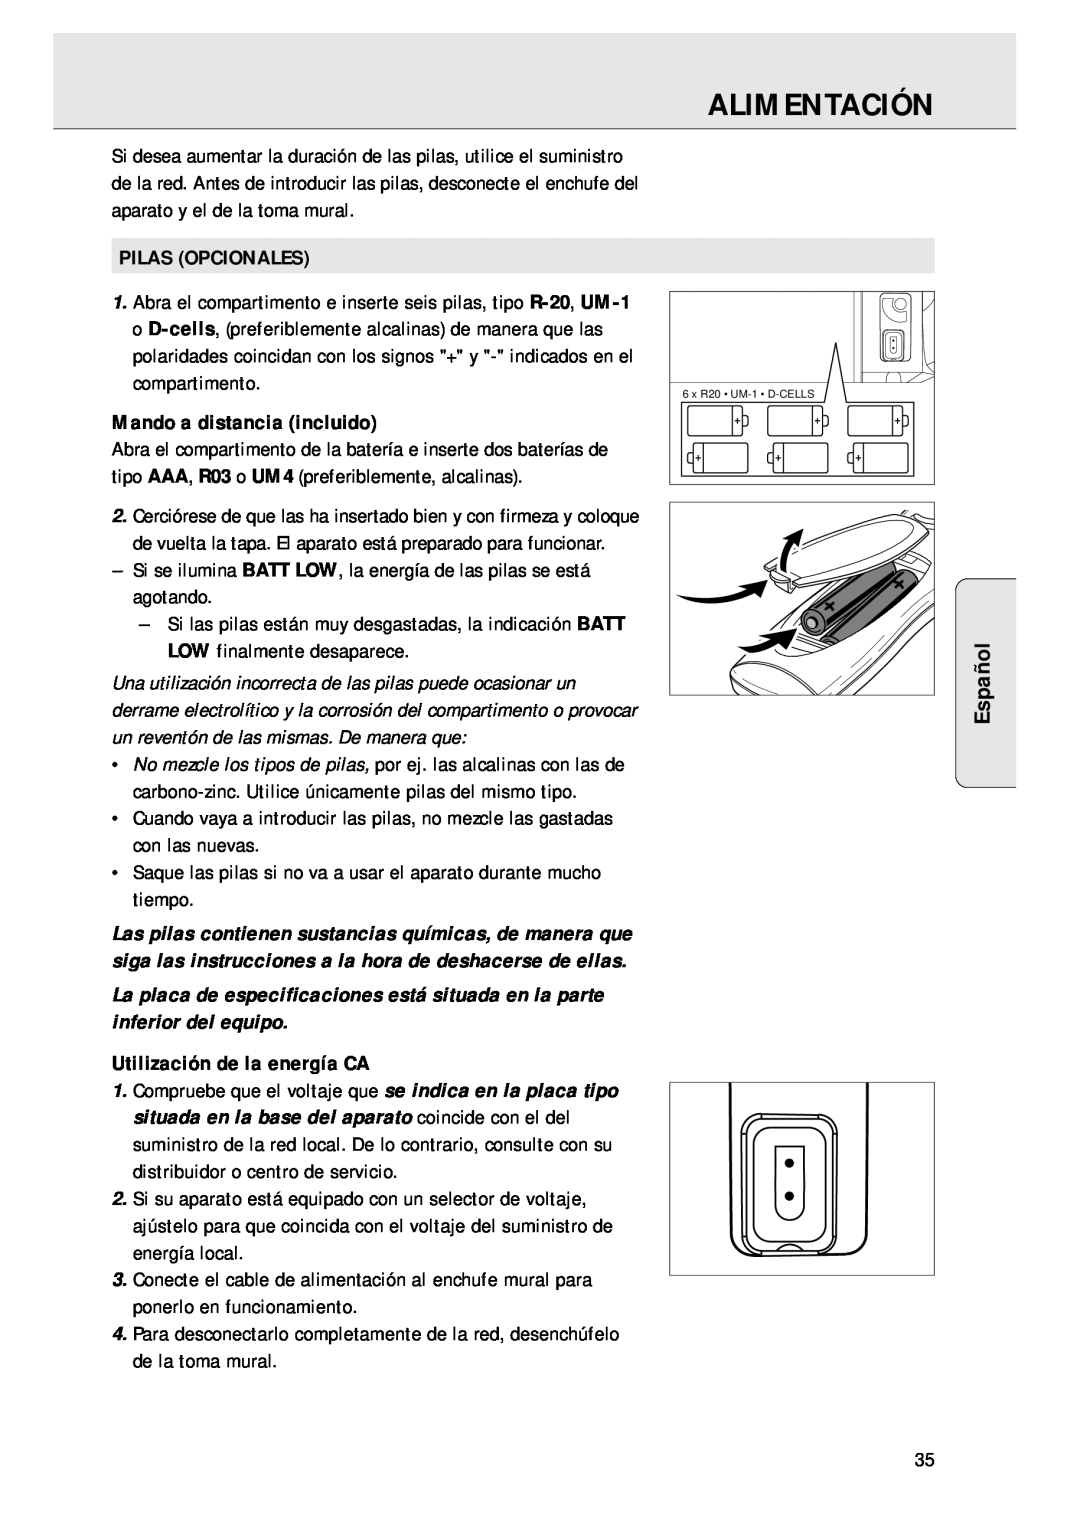 Magnavox AZ 1045 manual Alimentación, Español, Pilas Opcionales, Mando a distancia incluido, Utilización de la energía CA 